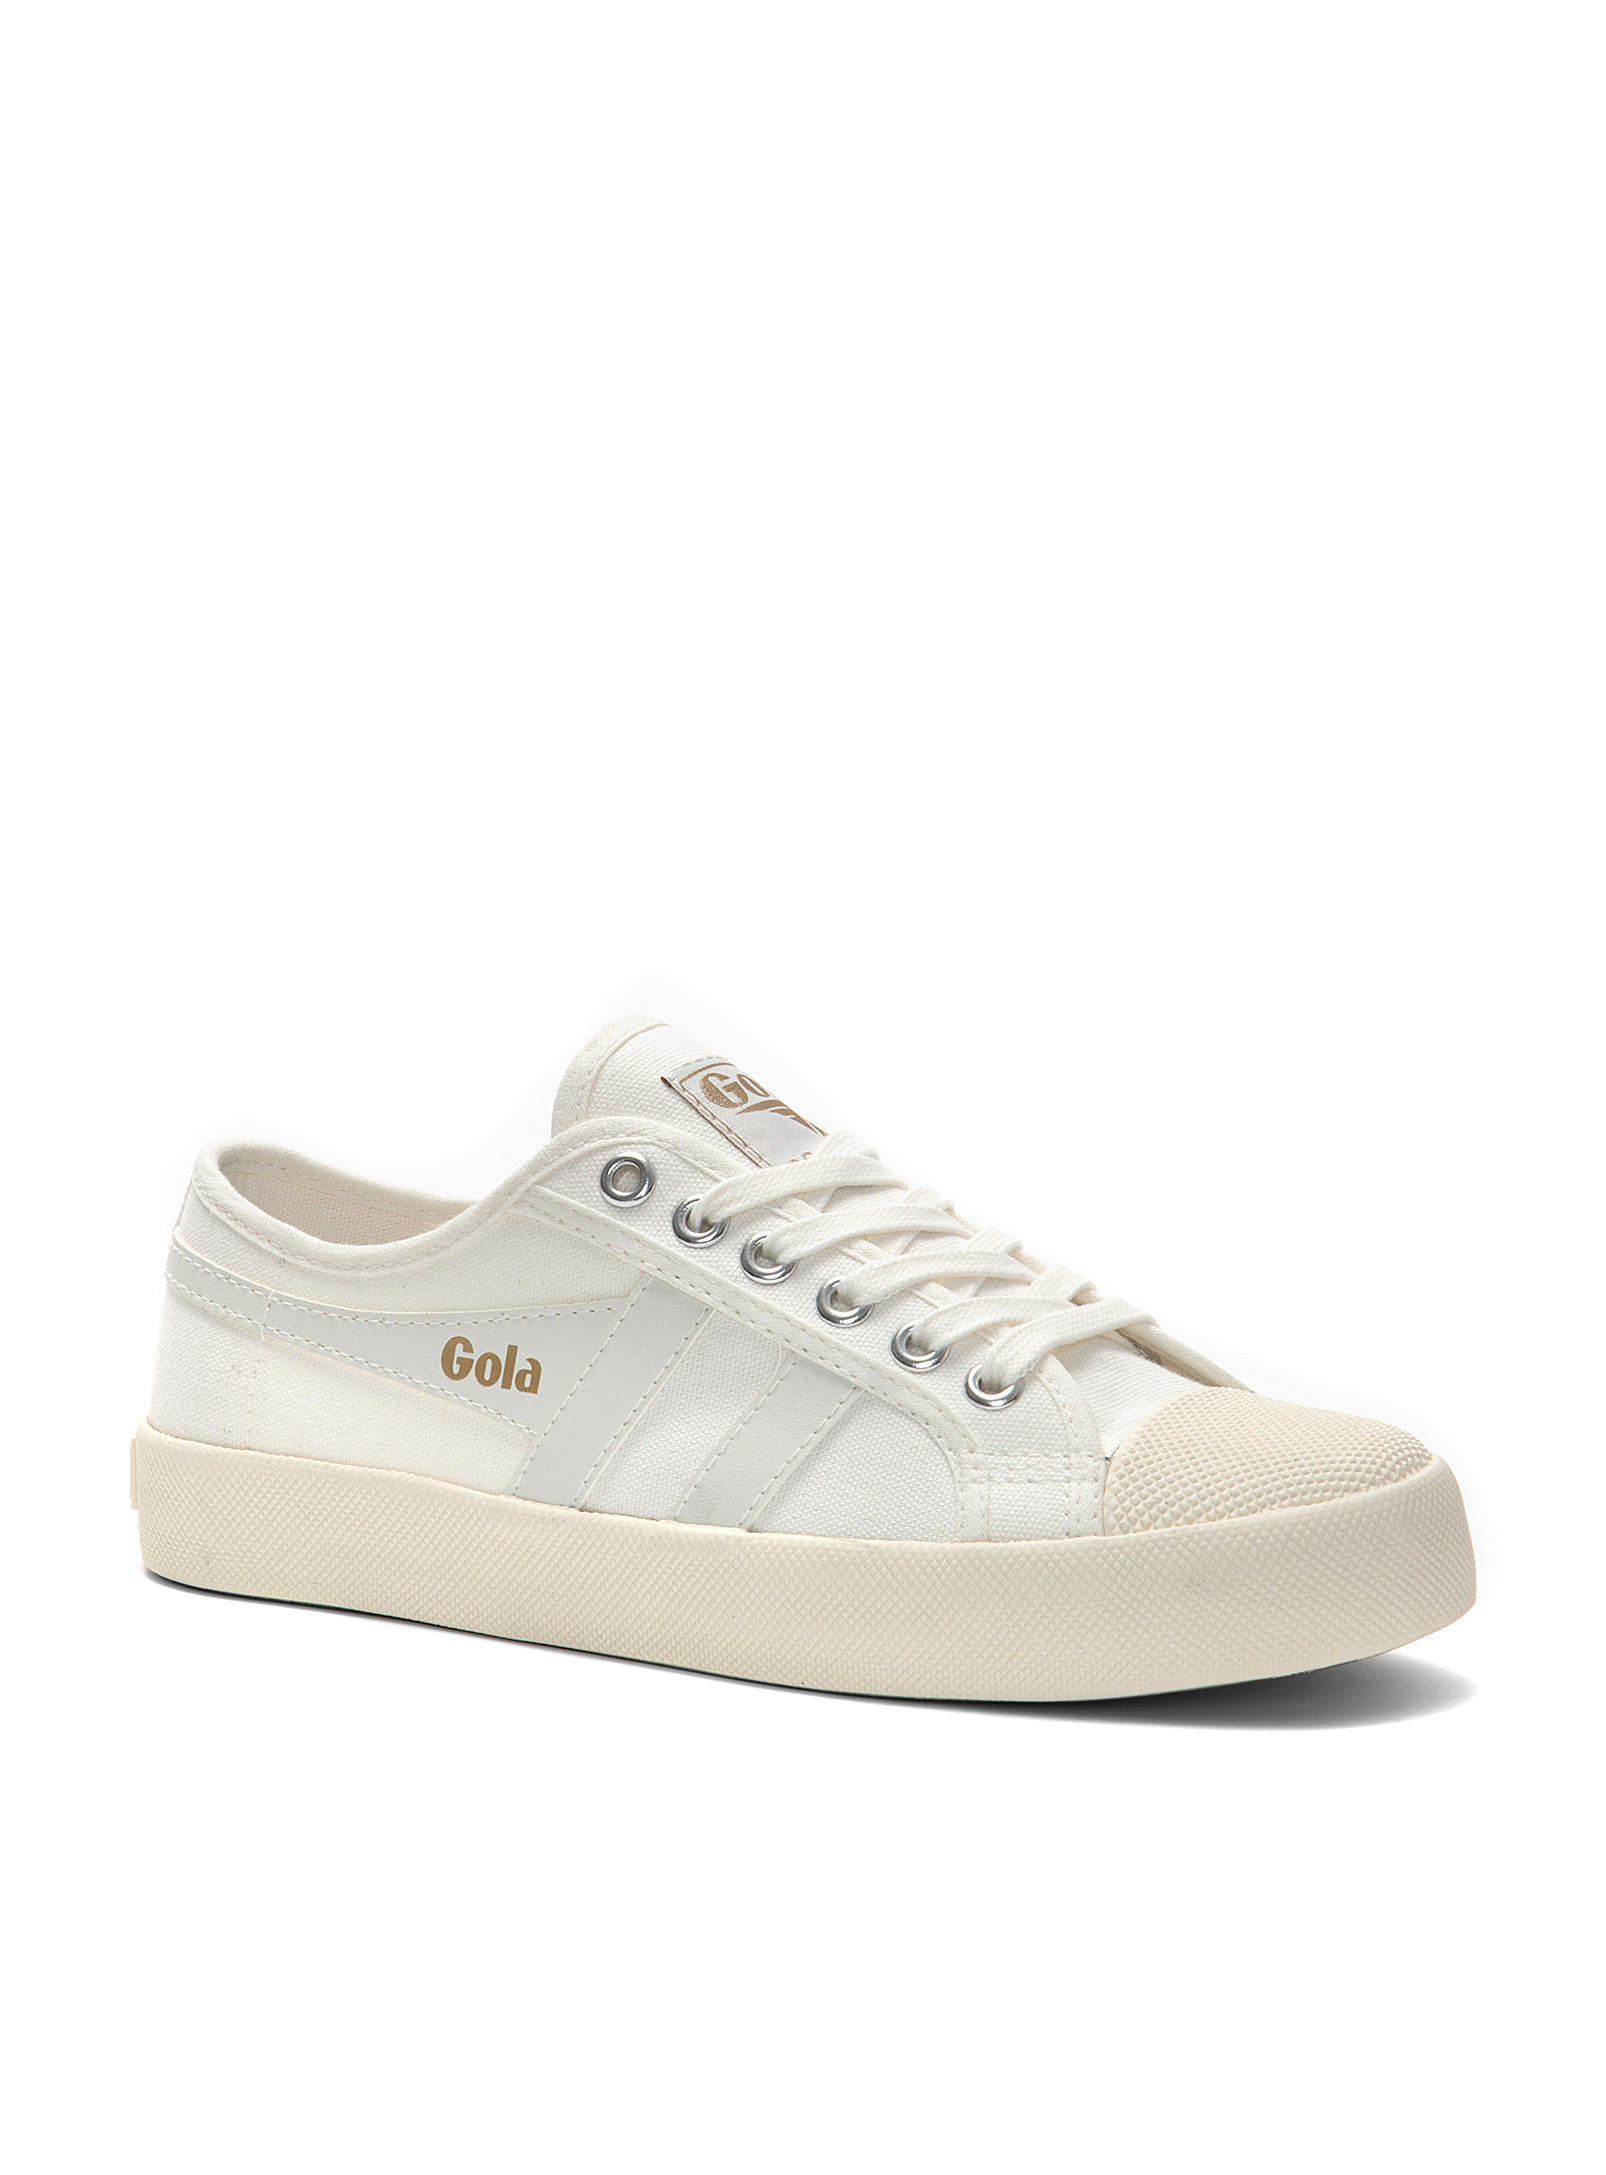 Gola - Chaussures Le Sneaker rétro Coaster blanc et doré Femme